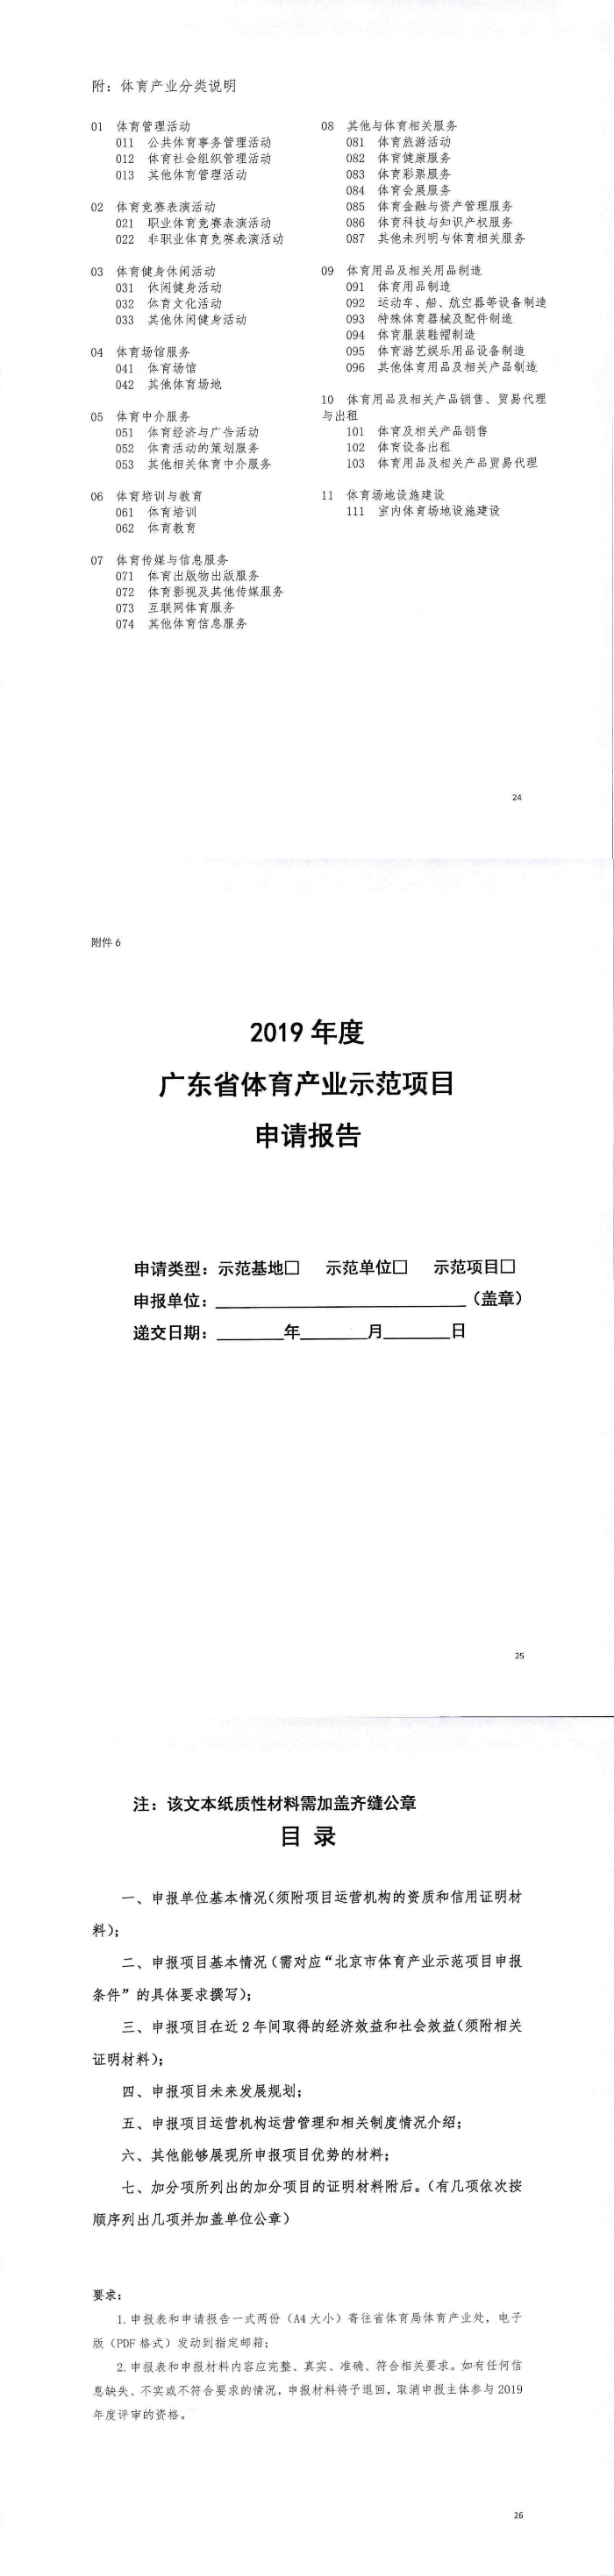 关于广东省2019年体育产业示范基地、示范单位、示范项目申报工作的补充通知_2.jpg